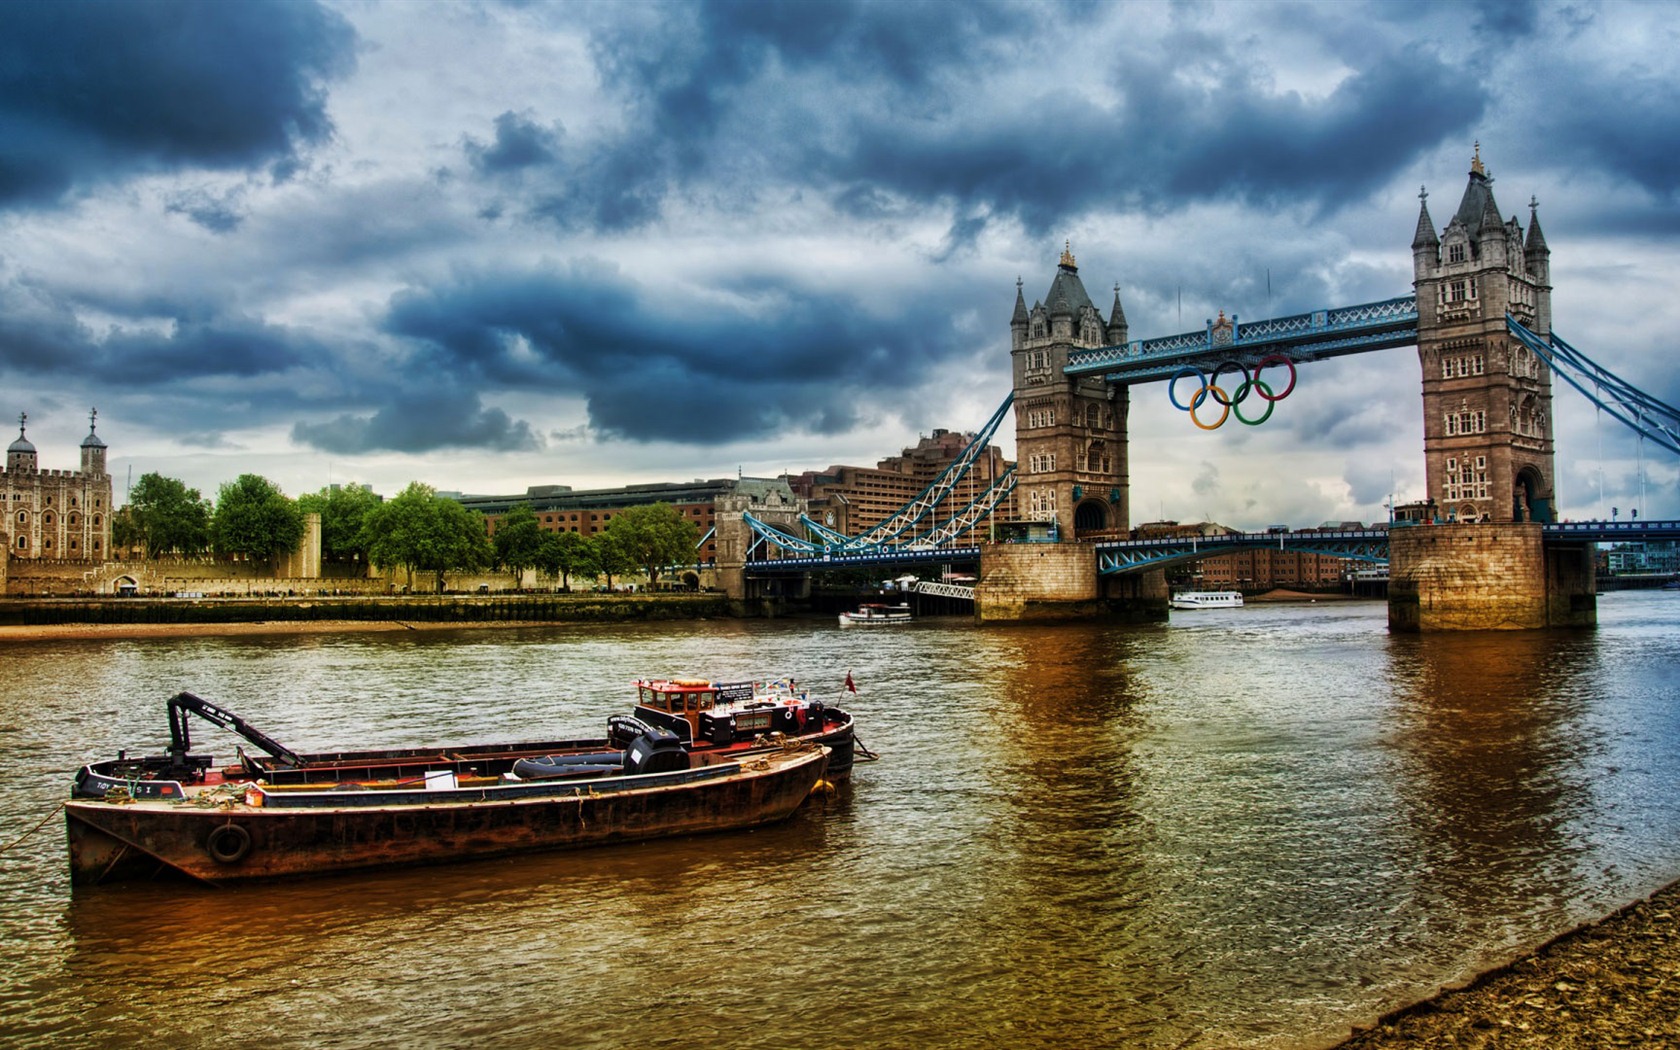 Londres 2012 Olimpiadas fondos temáticos (1) #26 - 1680x1050